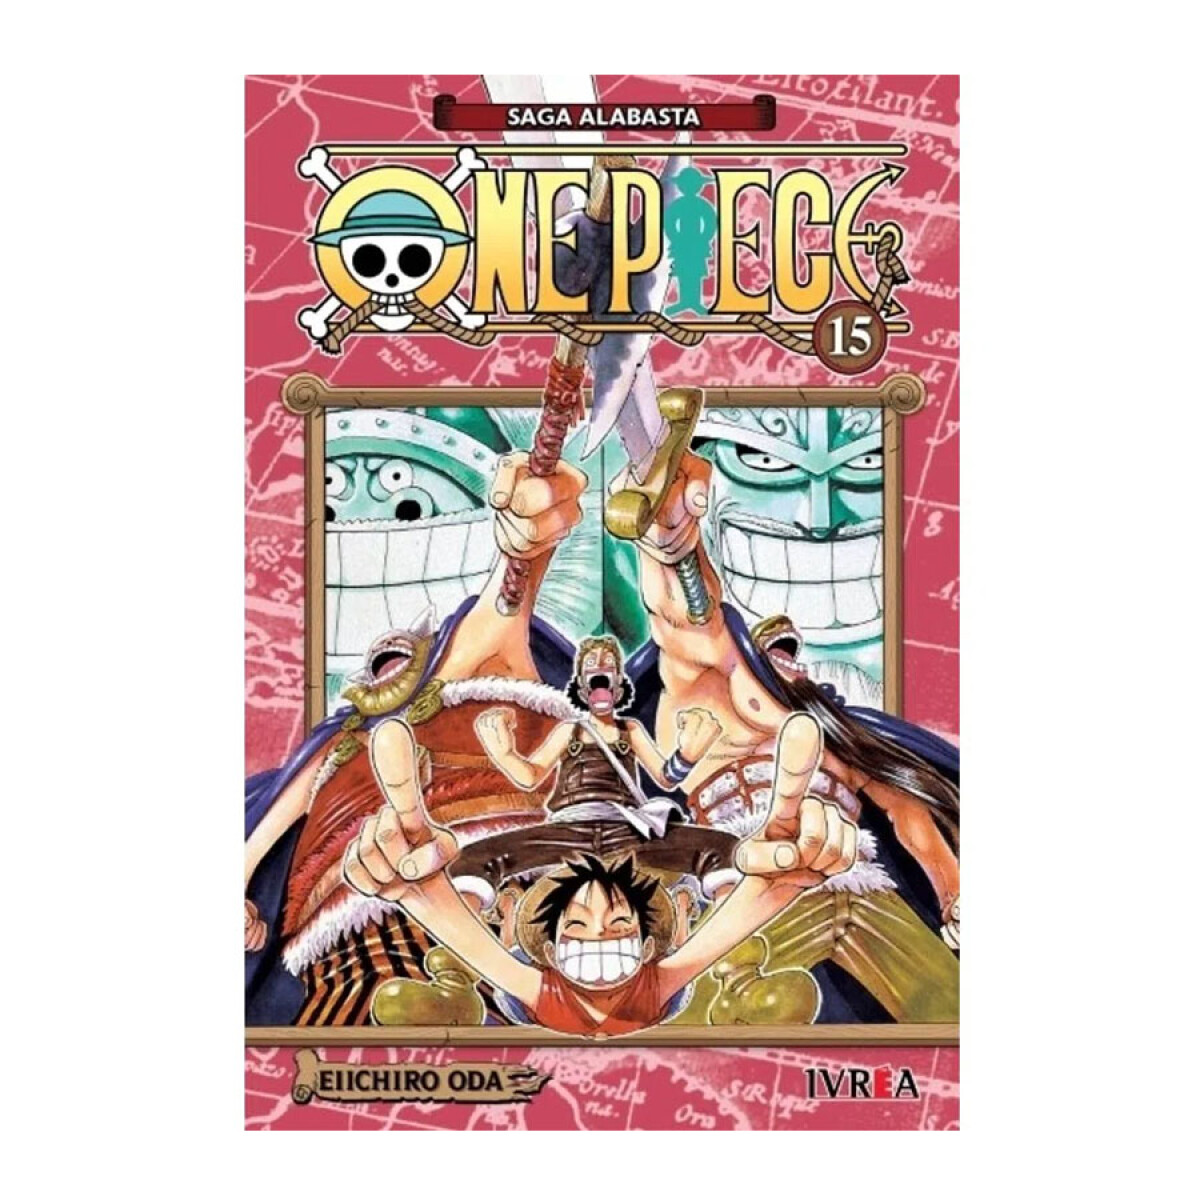 ▷ One Piece Temporada 15 【Sub Español】